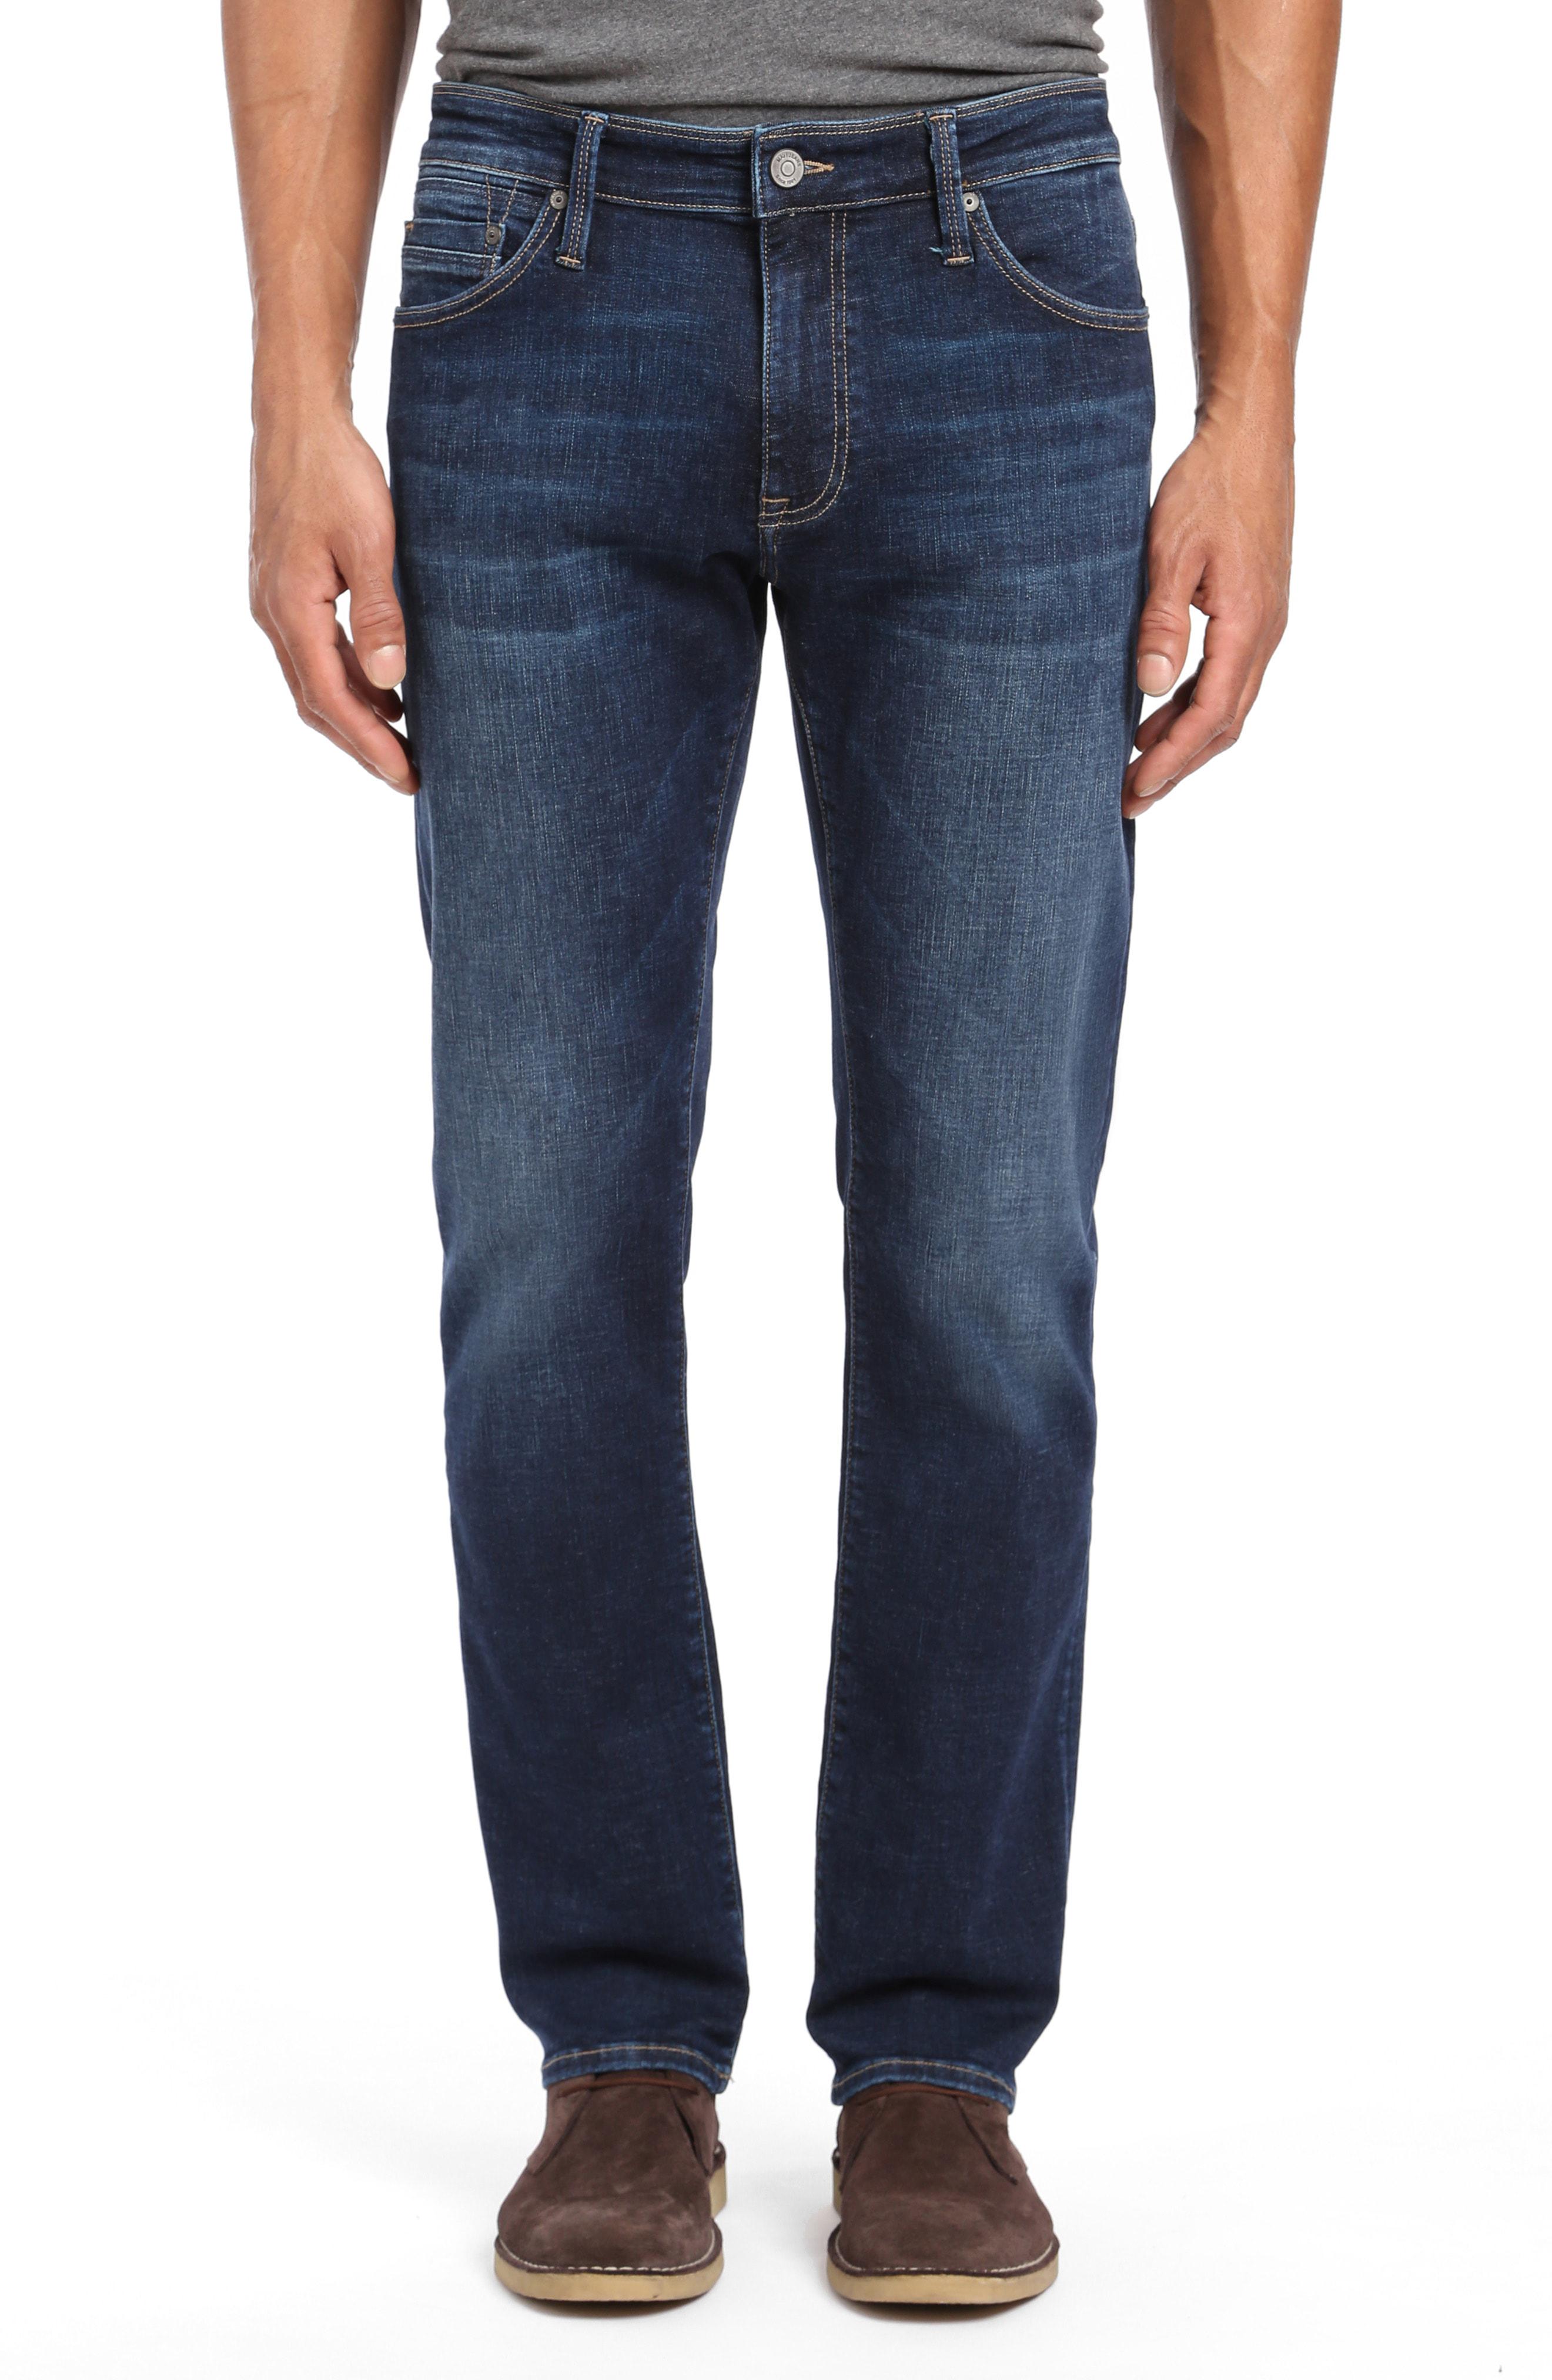 Lyst - Mavi Jeans Marcus Slim Straight Leg Jeans in Blue for Men